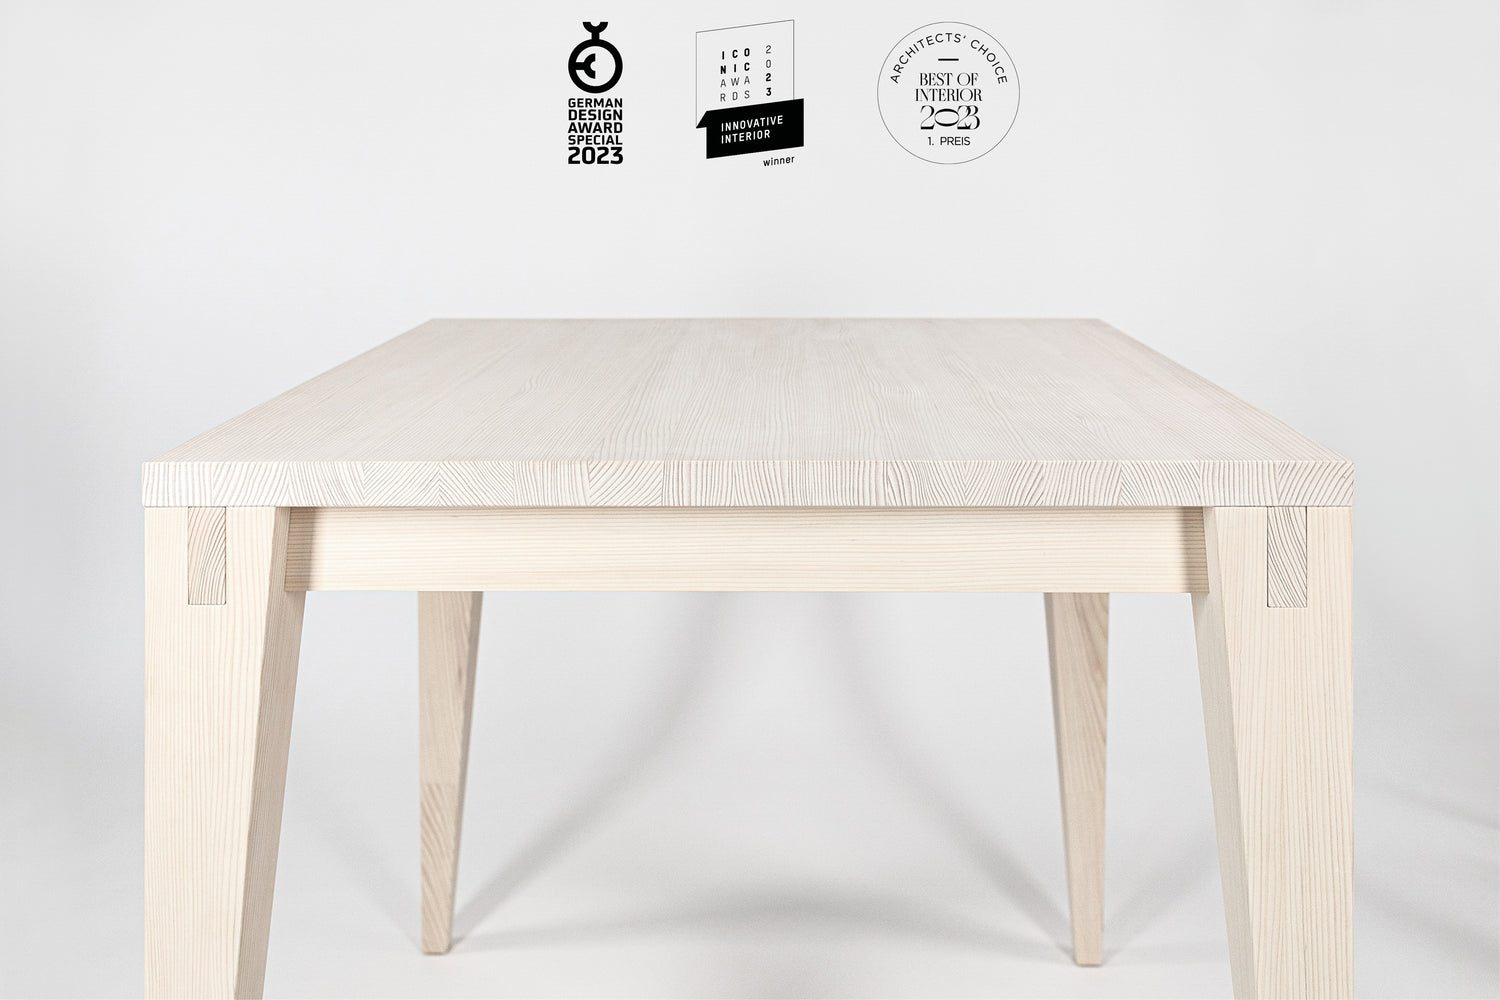 Der Holztisch Josef hat im Jahr 2023 viele Design Awards gewonnen!